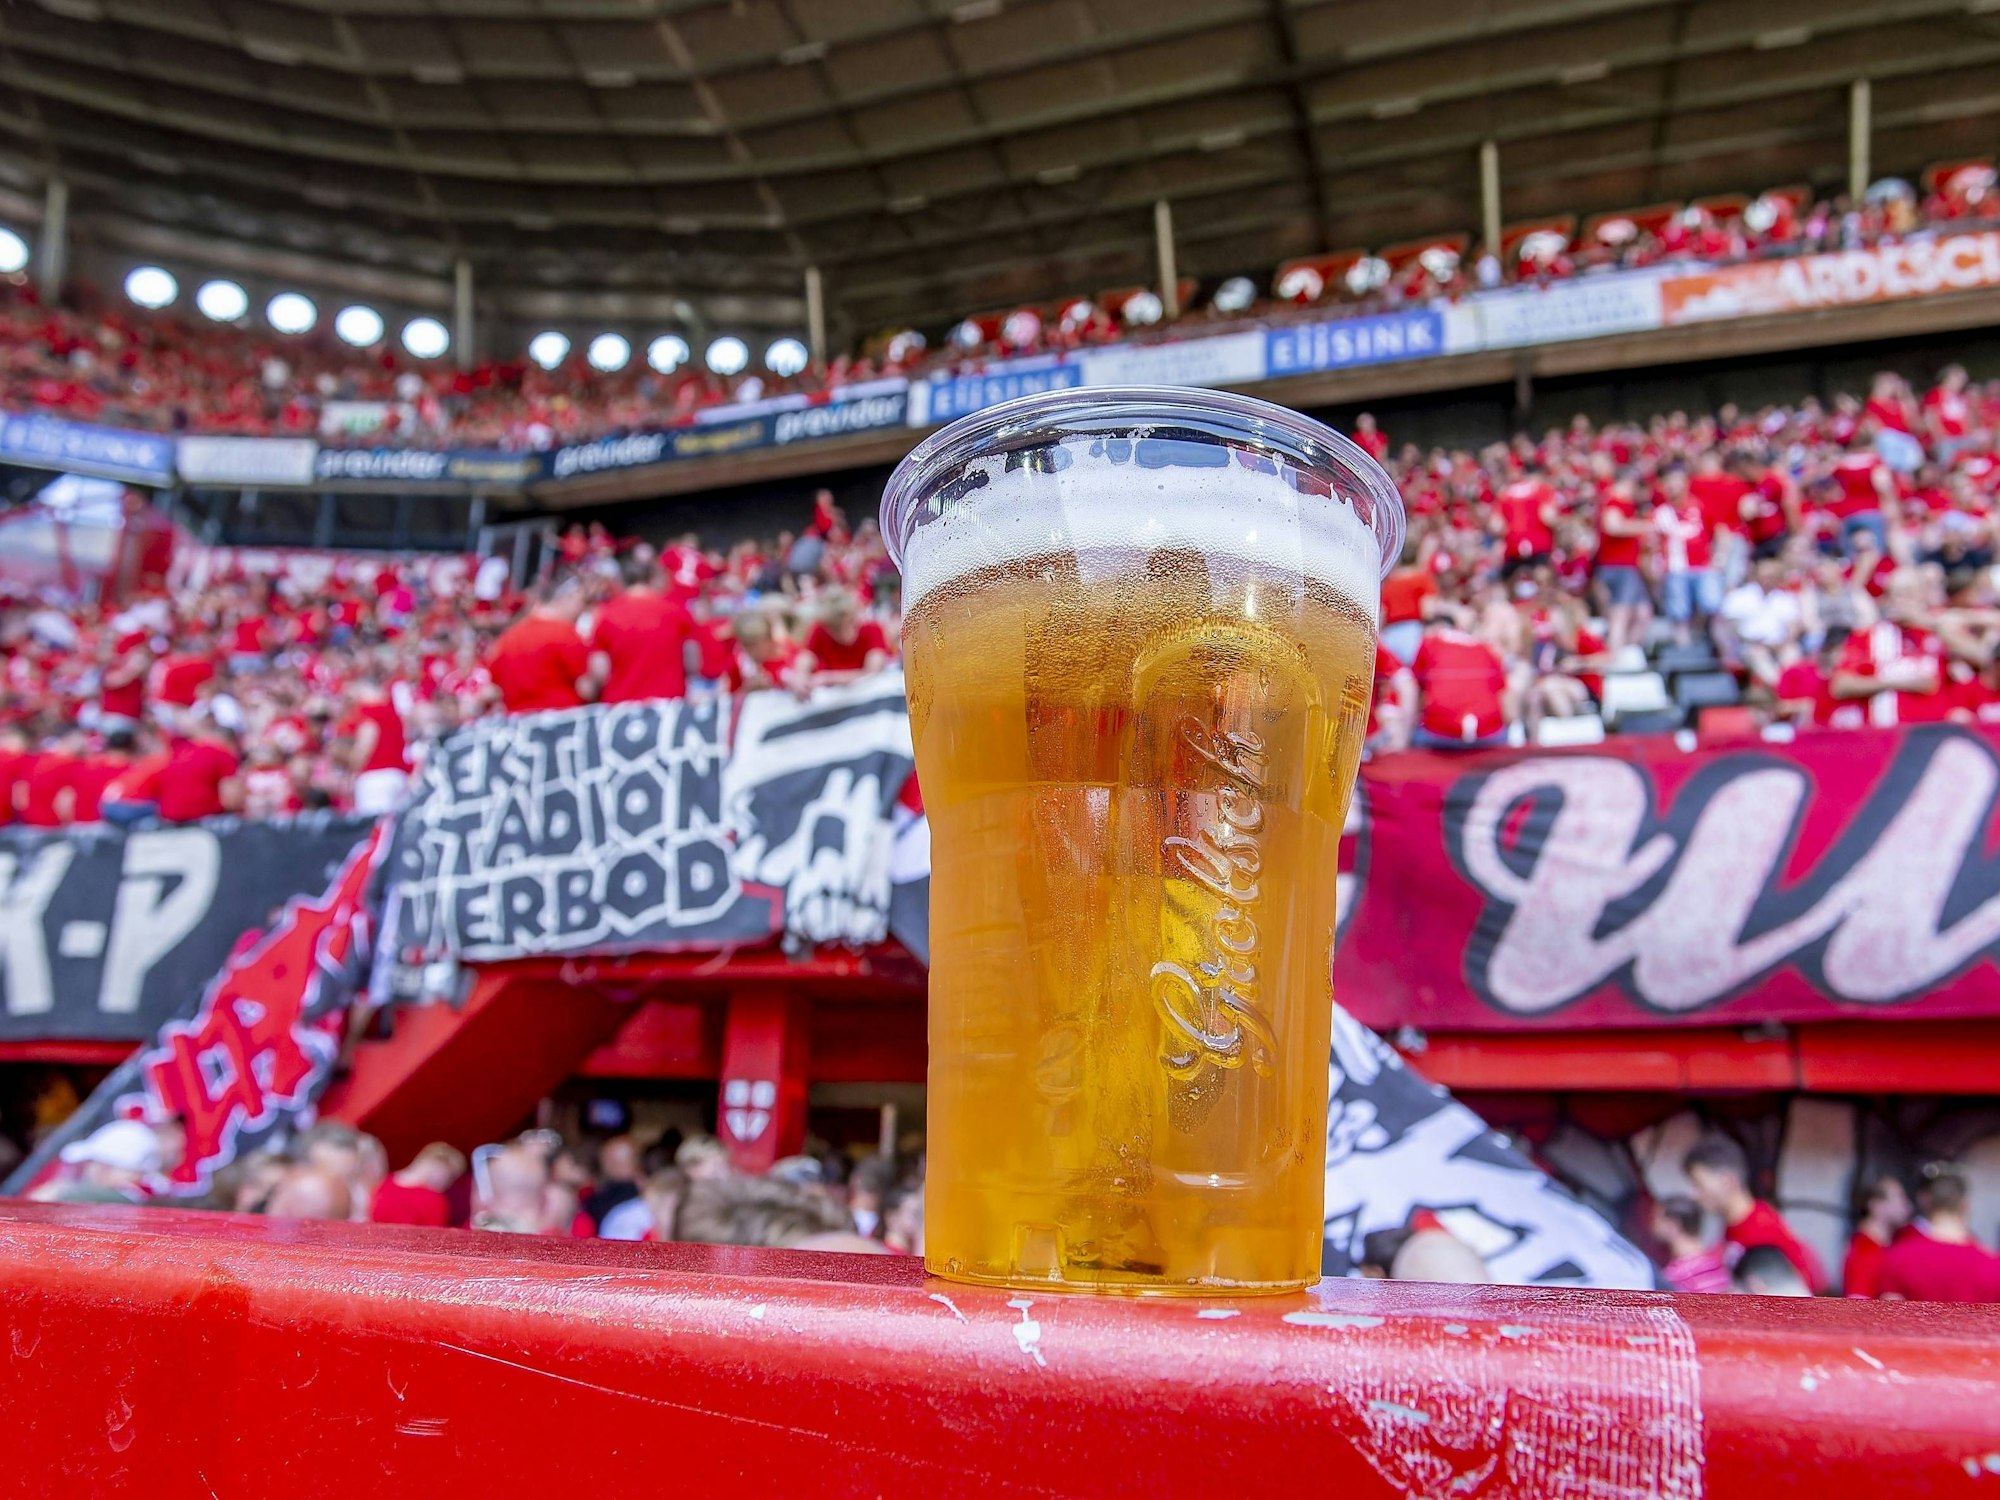 Ein typisches Grolsch-Bier aus dem Stadion des FC Twente Enschede.